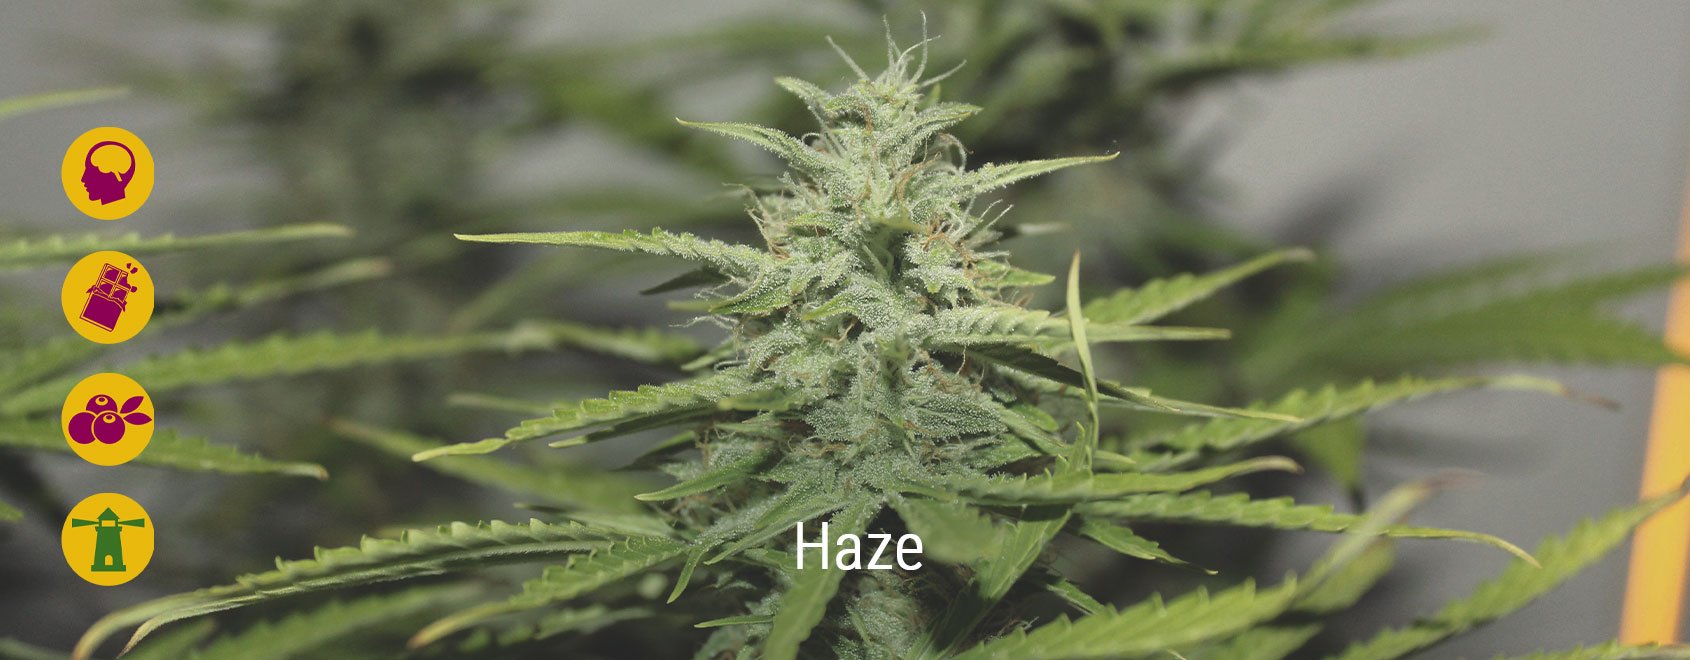 Best haze cannabis strains